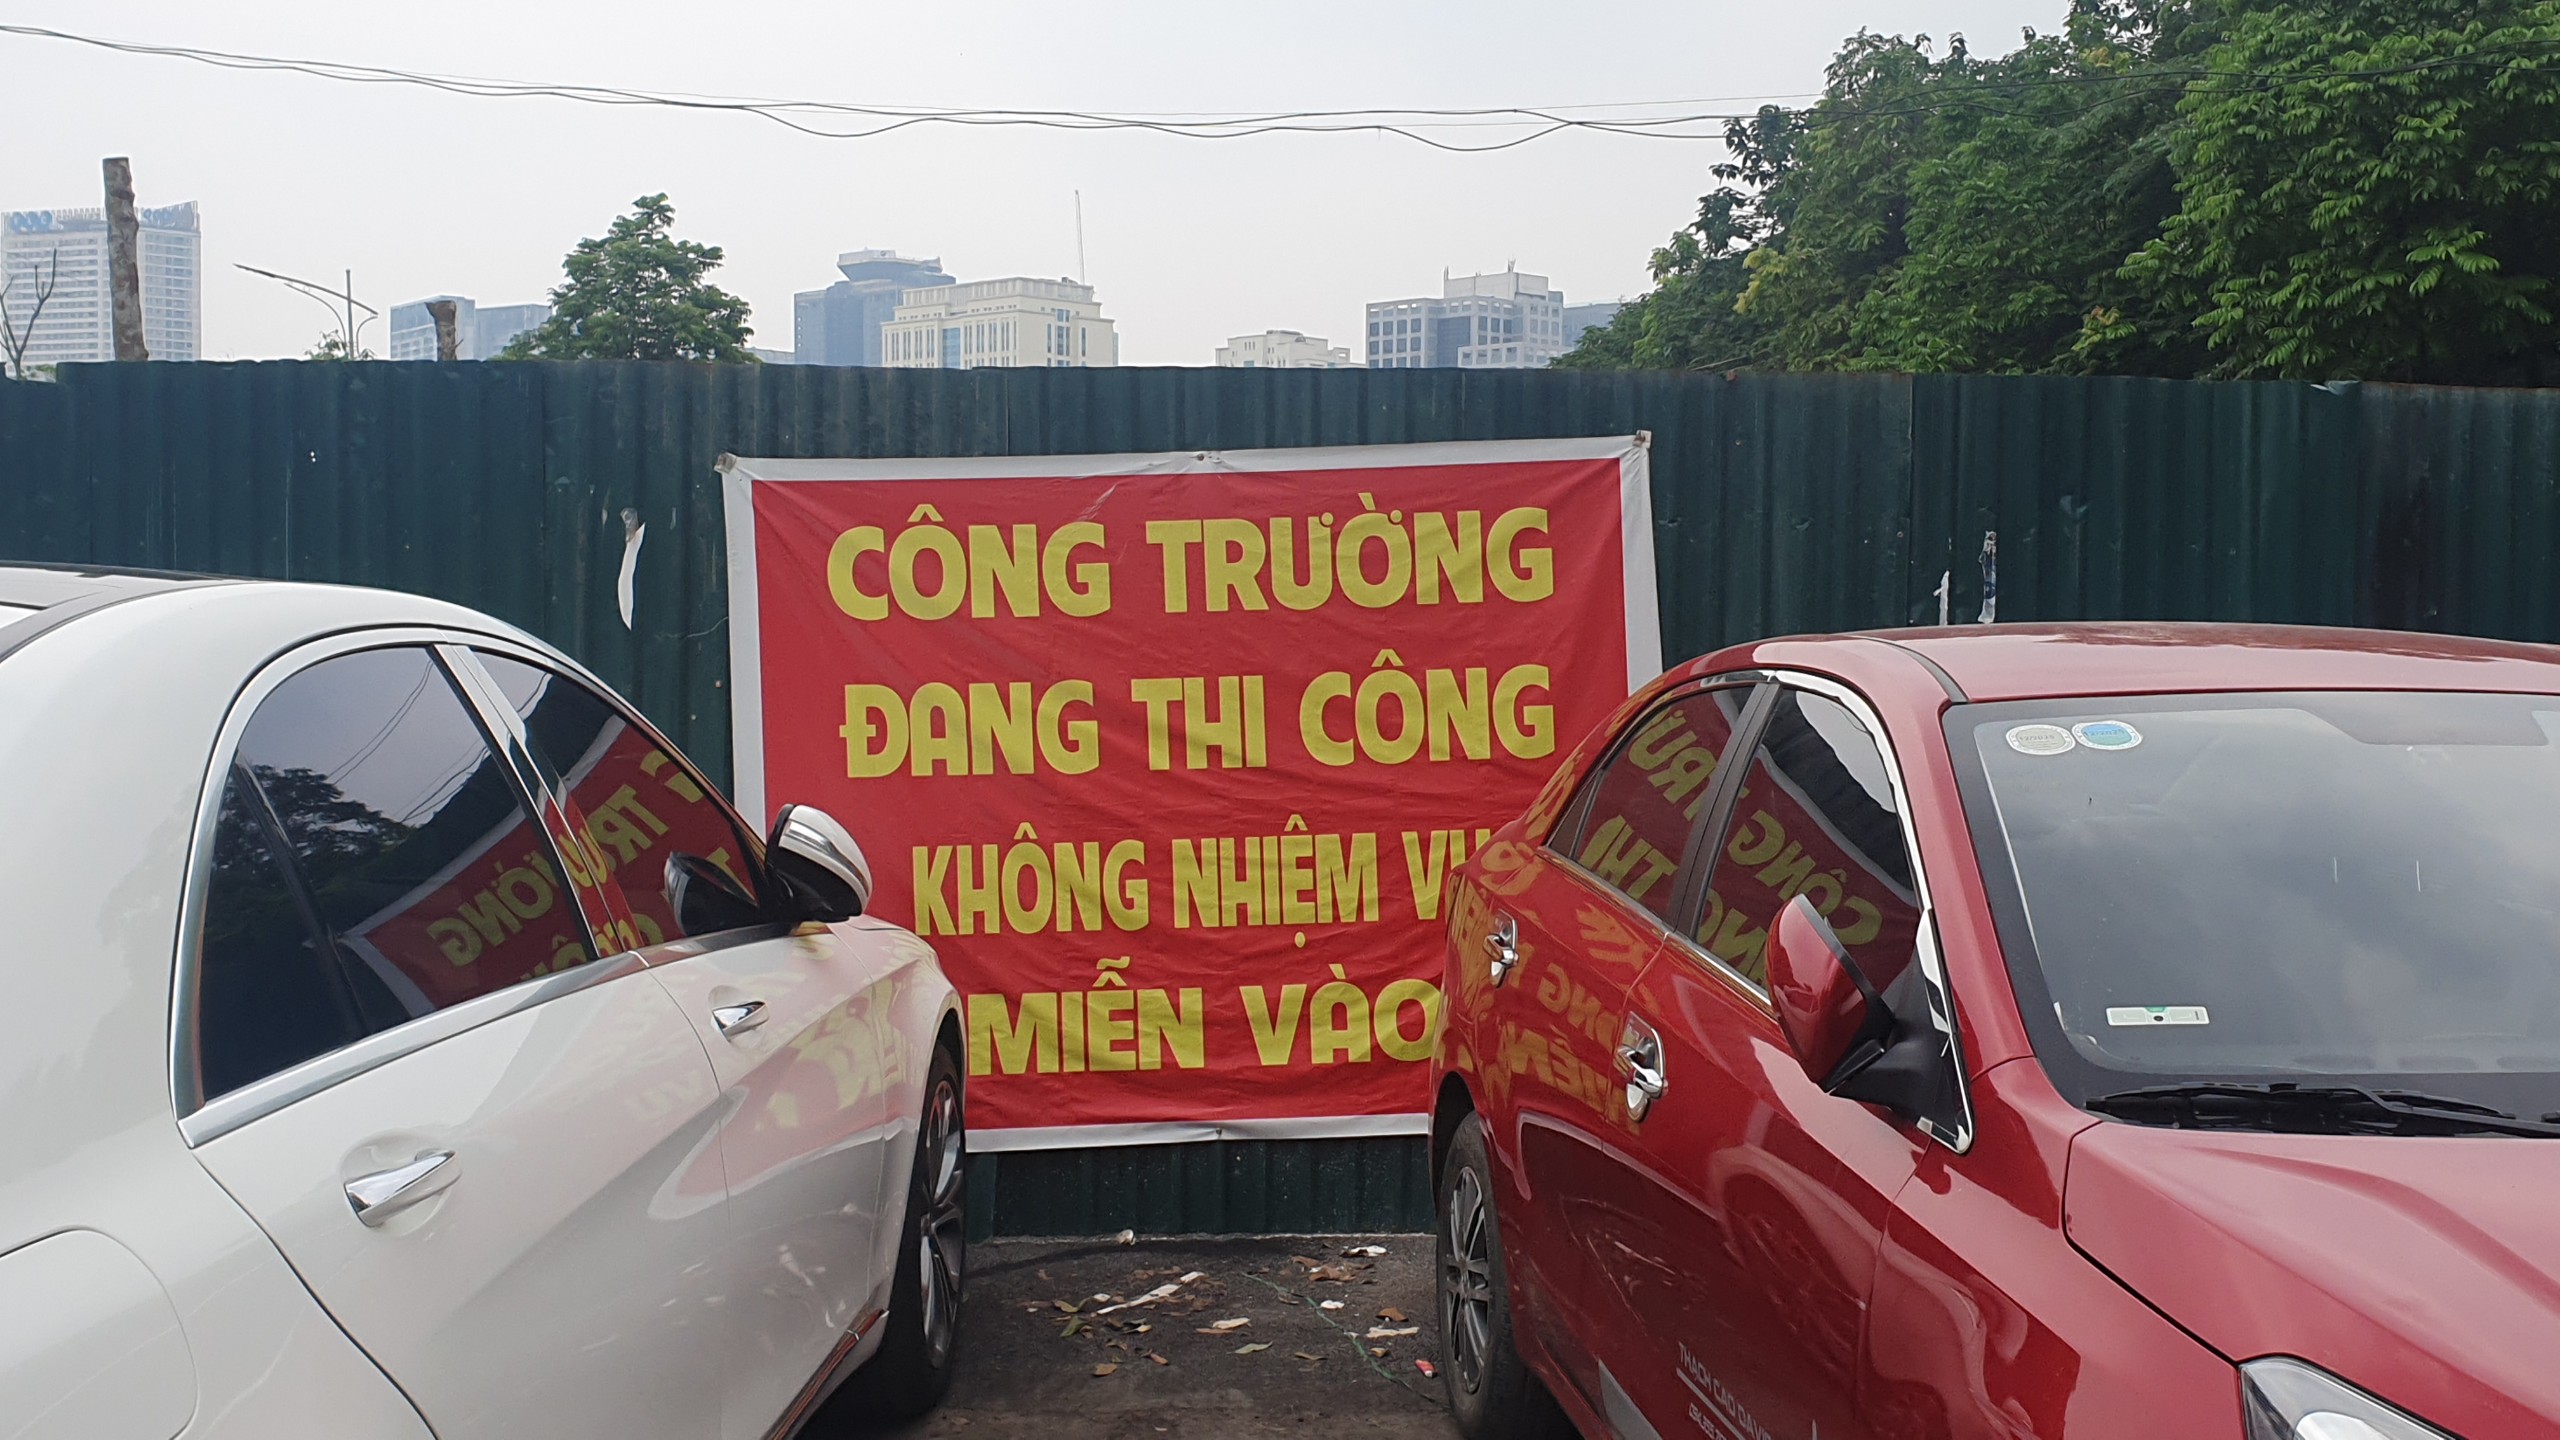 Kỳ lạ ở Hà Nội, hai bên cách nhau chỉ khoảng vài trăm mét nhưng người dân muốn đi lại phải chạy đường vòng- Ảnh 1.